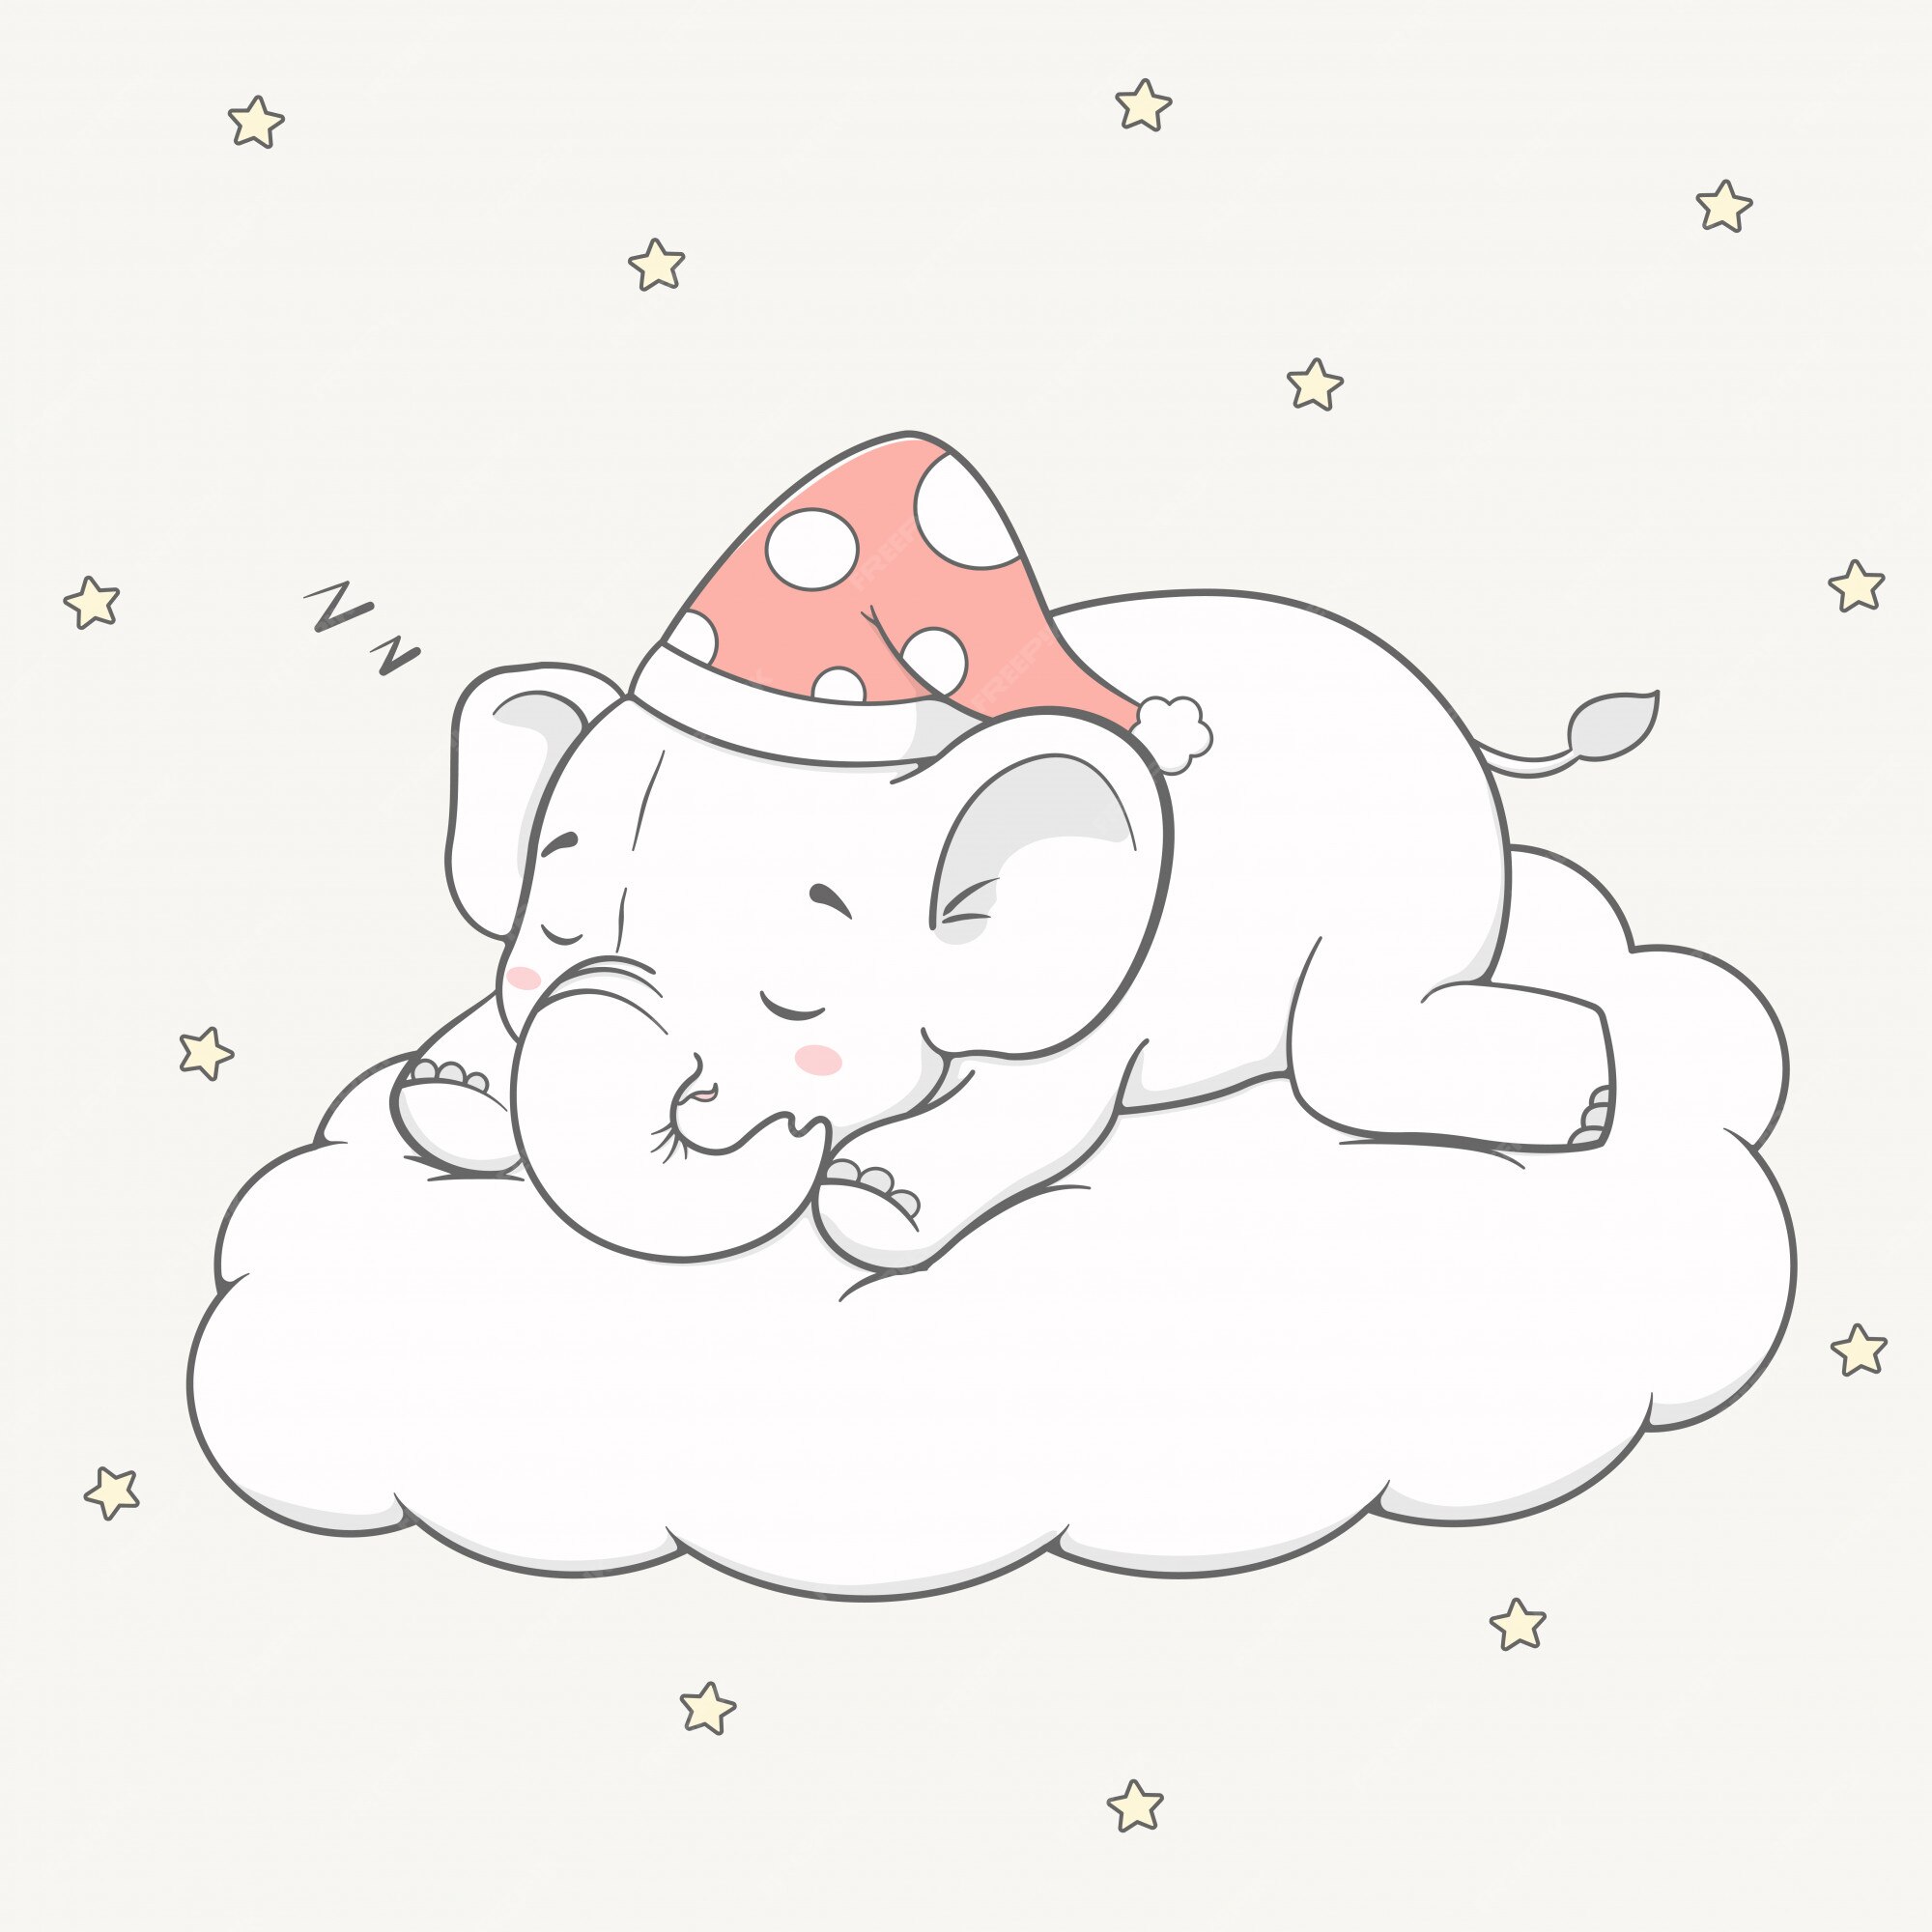 Premium Vector | Cute baby elephant sleep on the cloud cartoon hand drawn